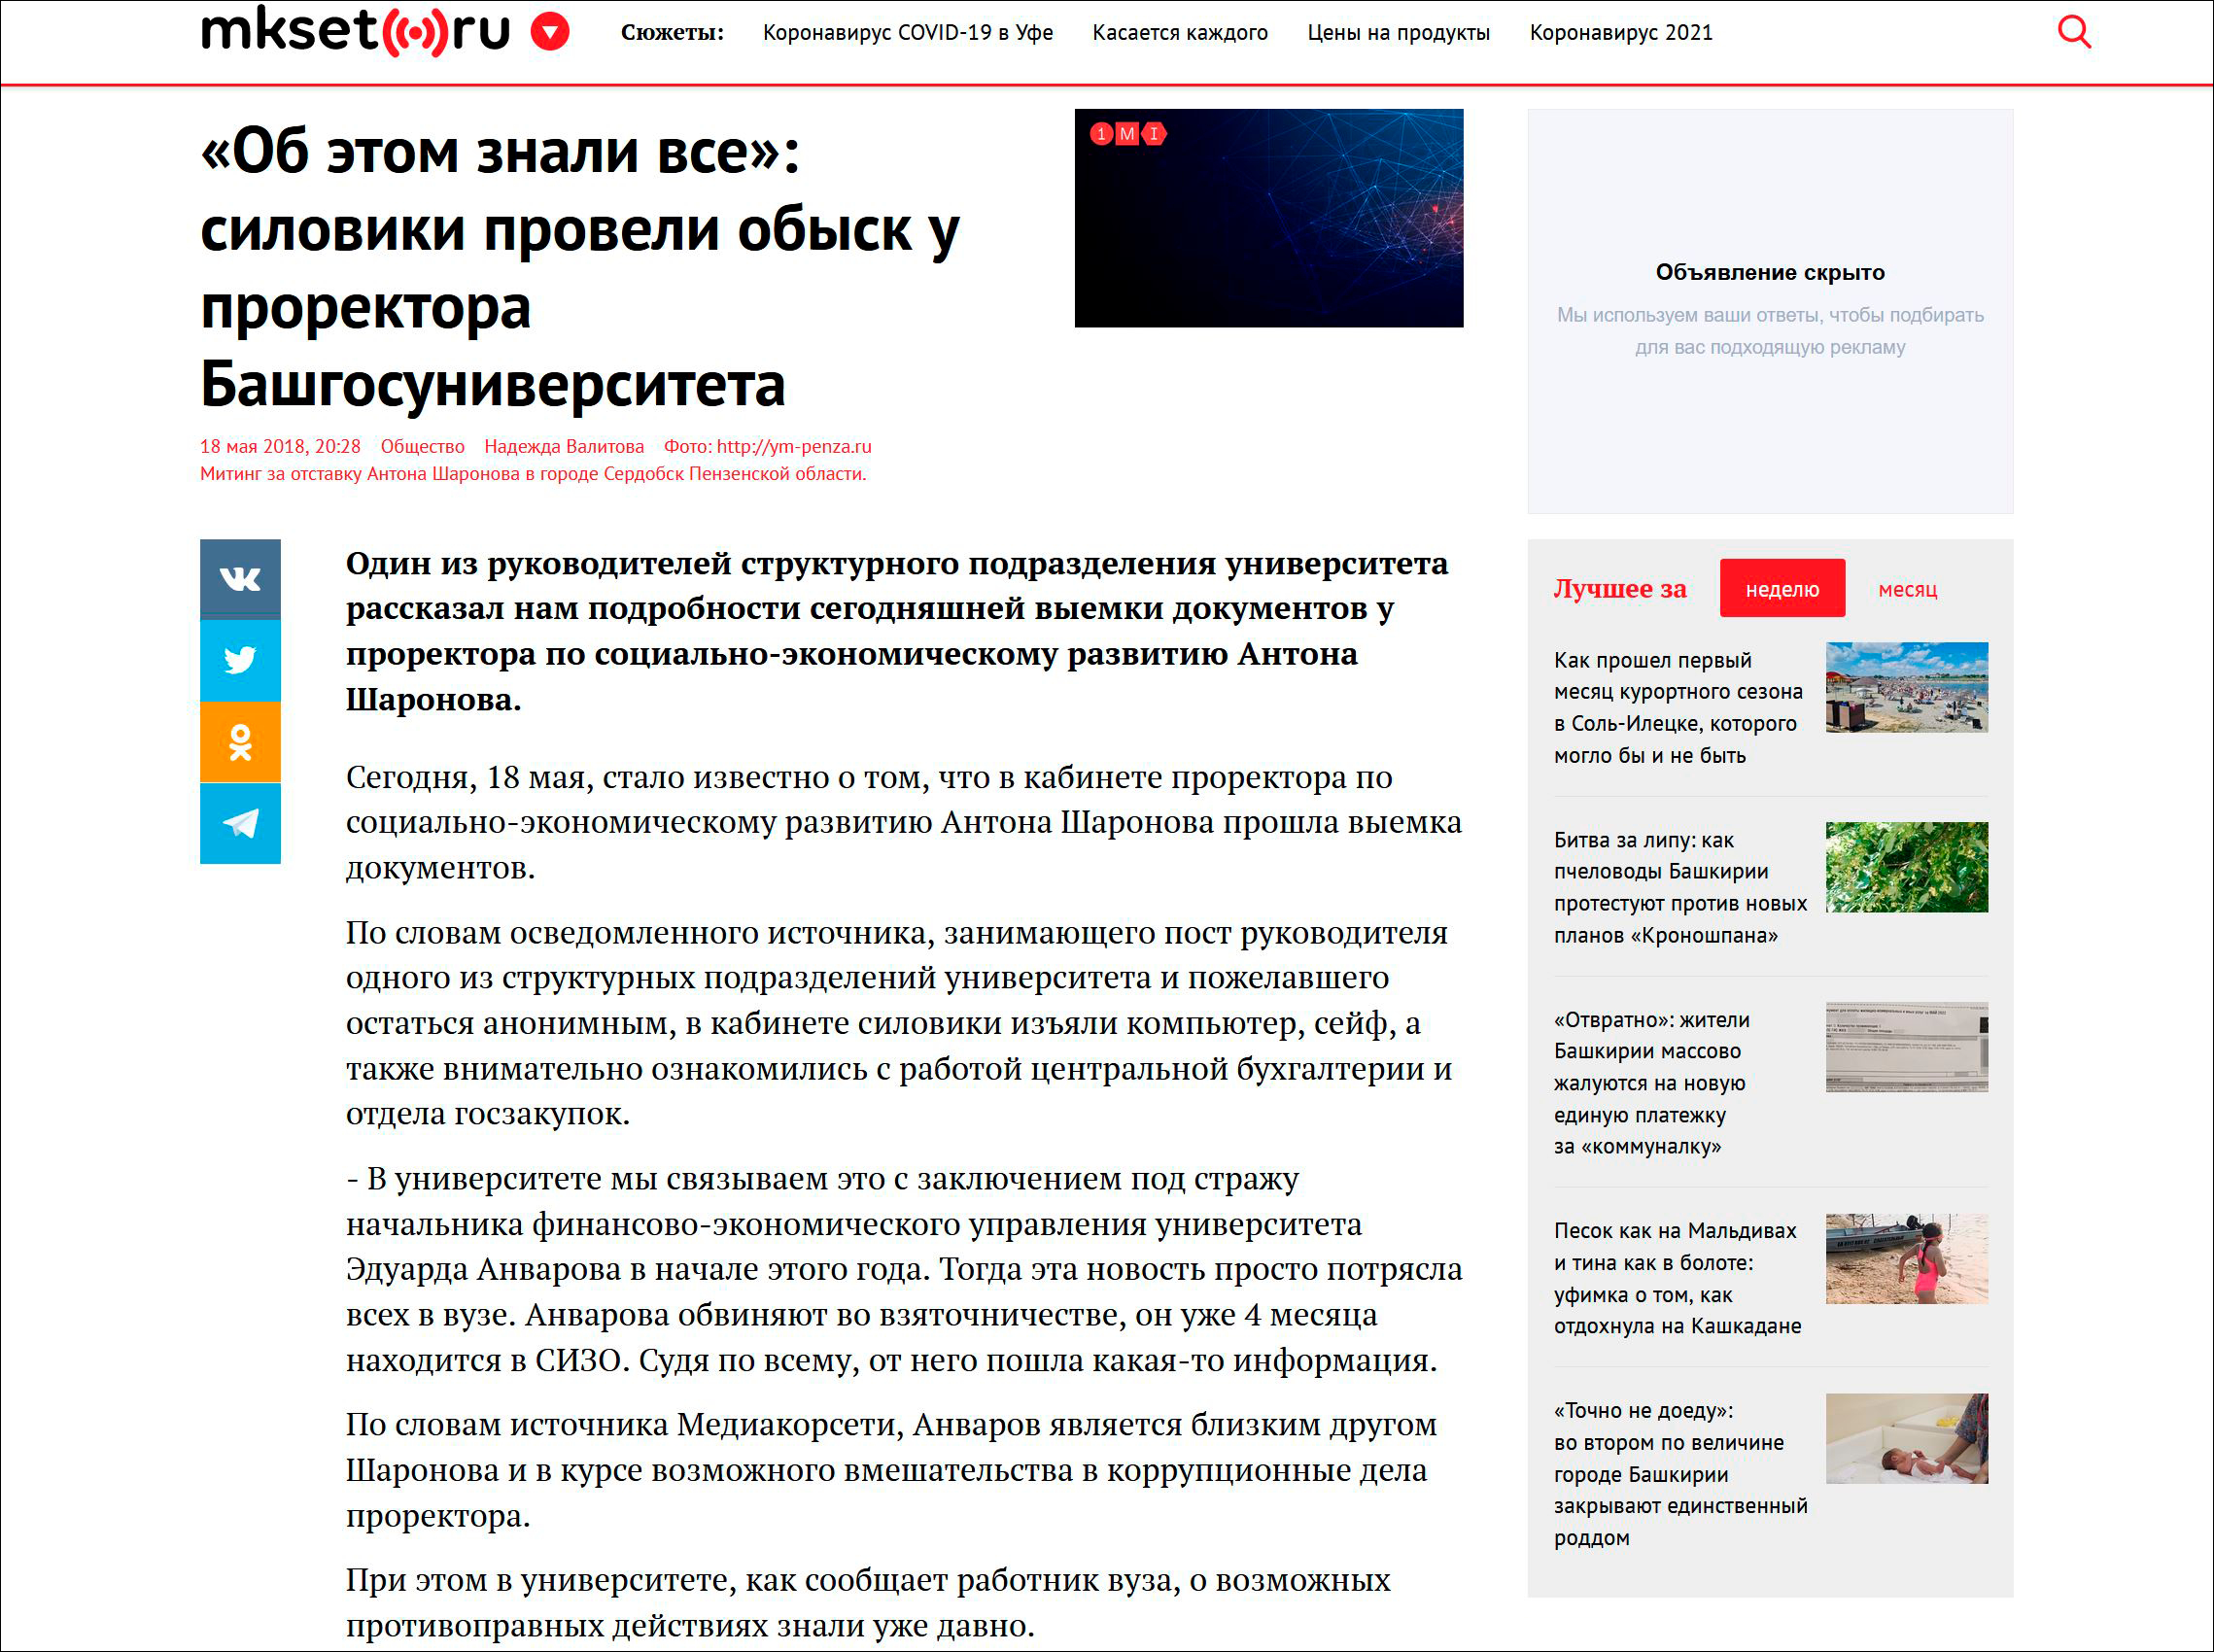 Антон Шаронов (гендиректор медиахолдинга «Экспресс») написал заявление в полицию